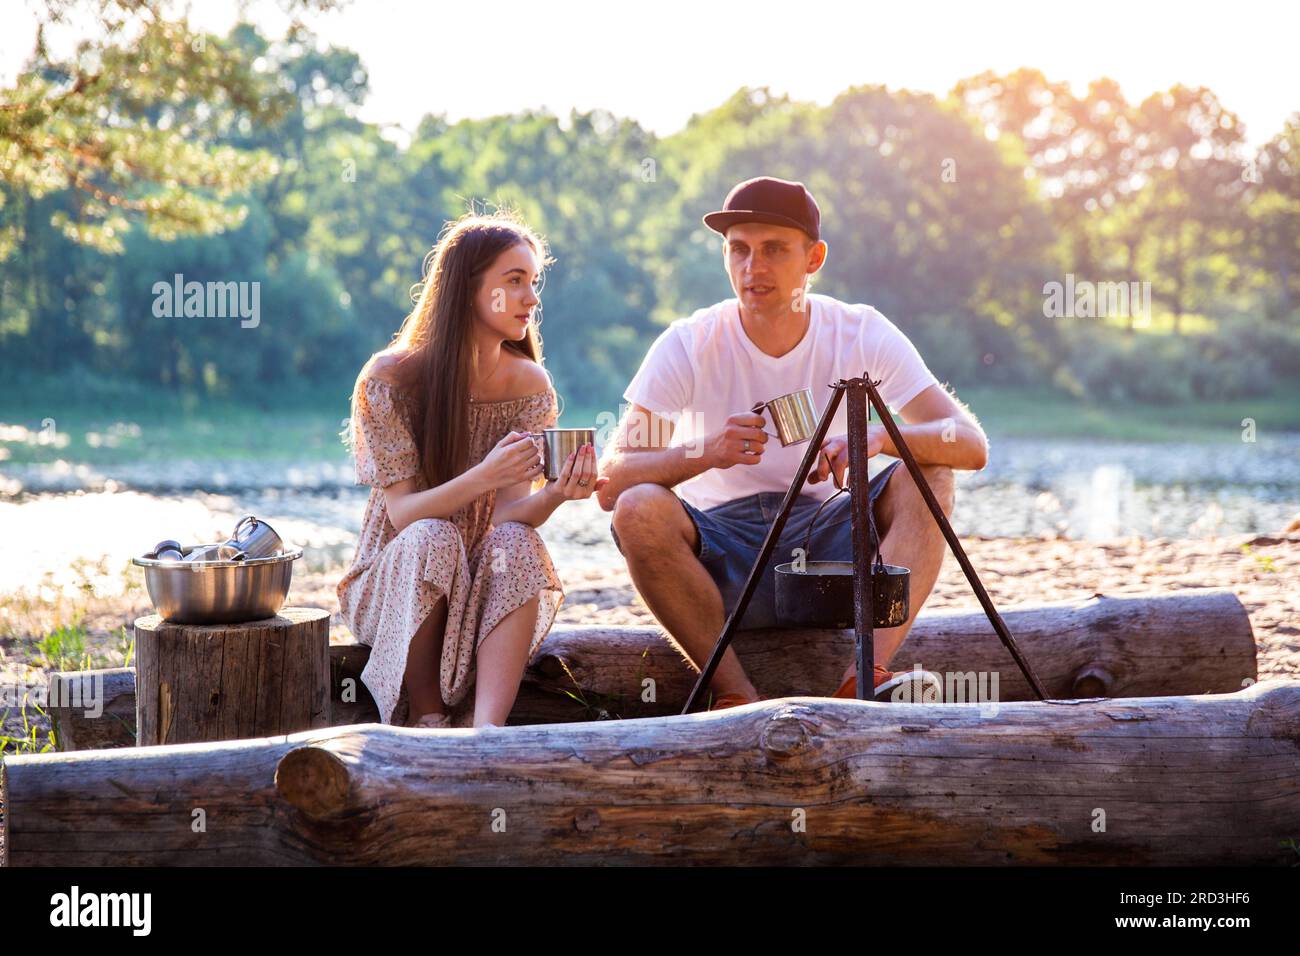 Jeune homme et fille s'assoient sur des bûches dans la nature et communiquent. Loisirs en plein air en été, détente. Banque D'Images